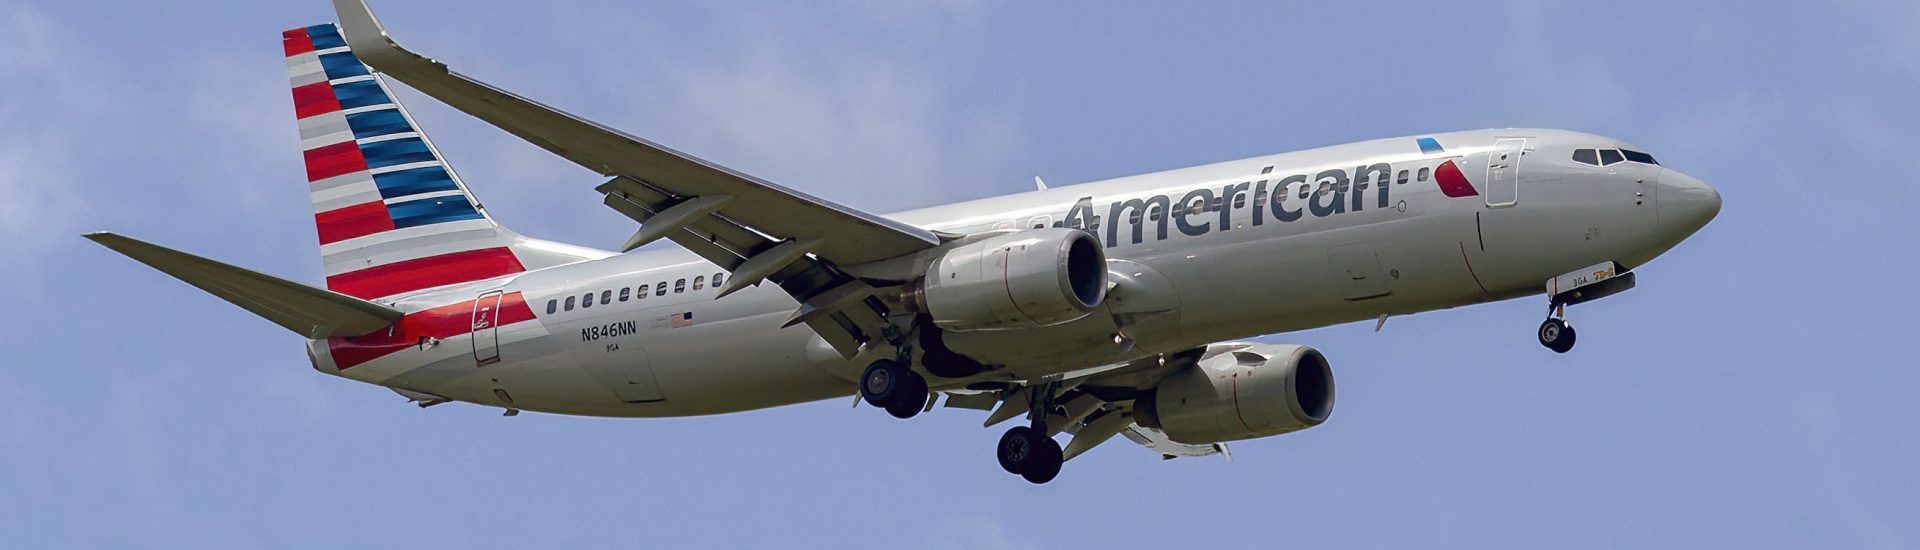 B737-800 American Airlines N846NN